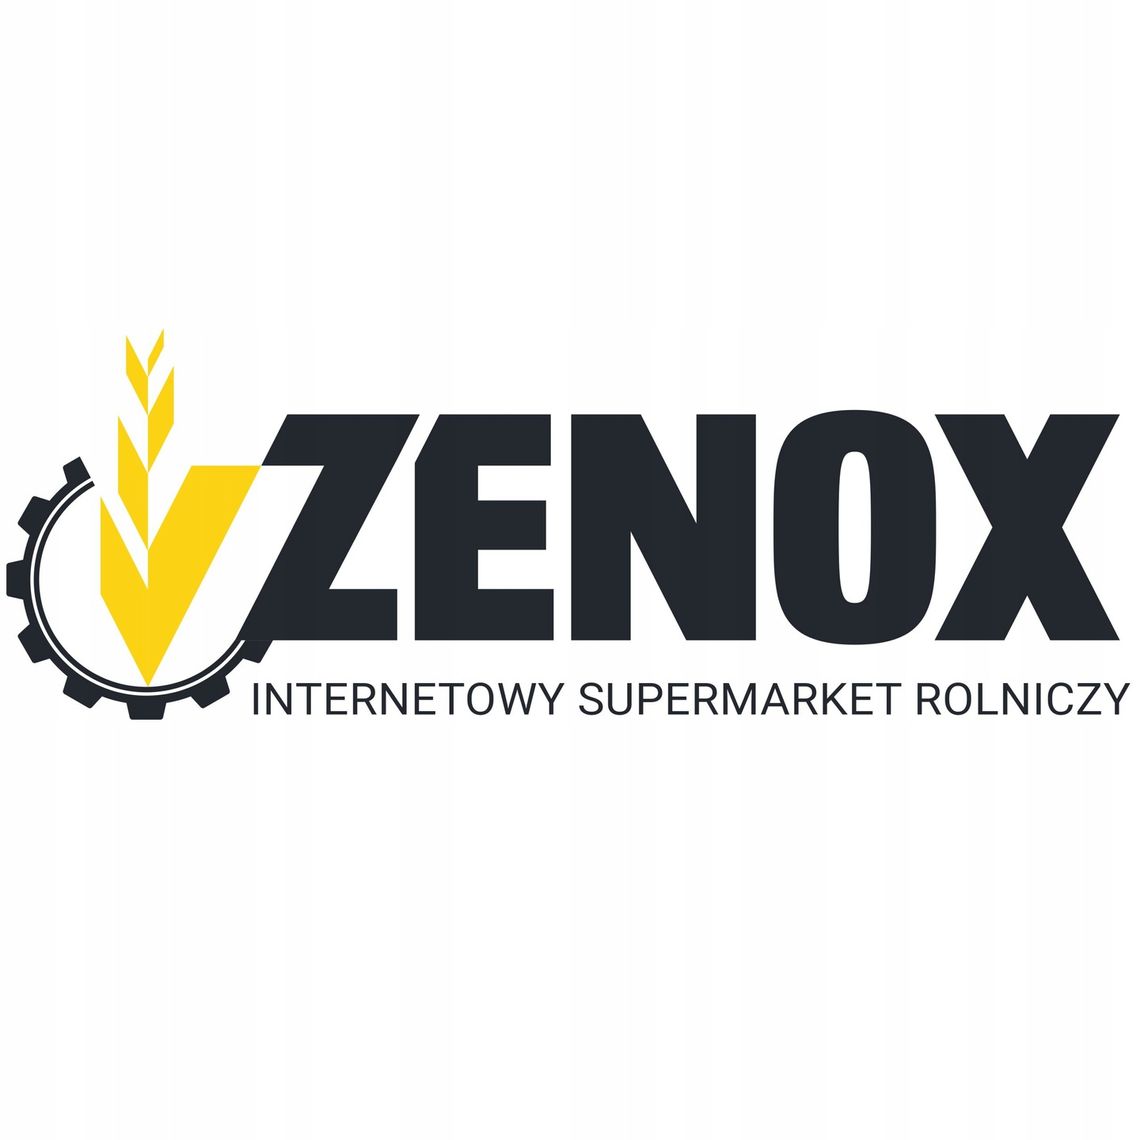 Zenox - części do maszyn rolniczych